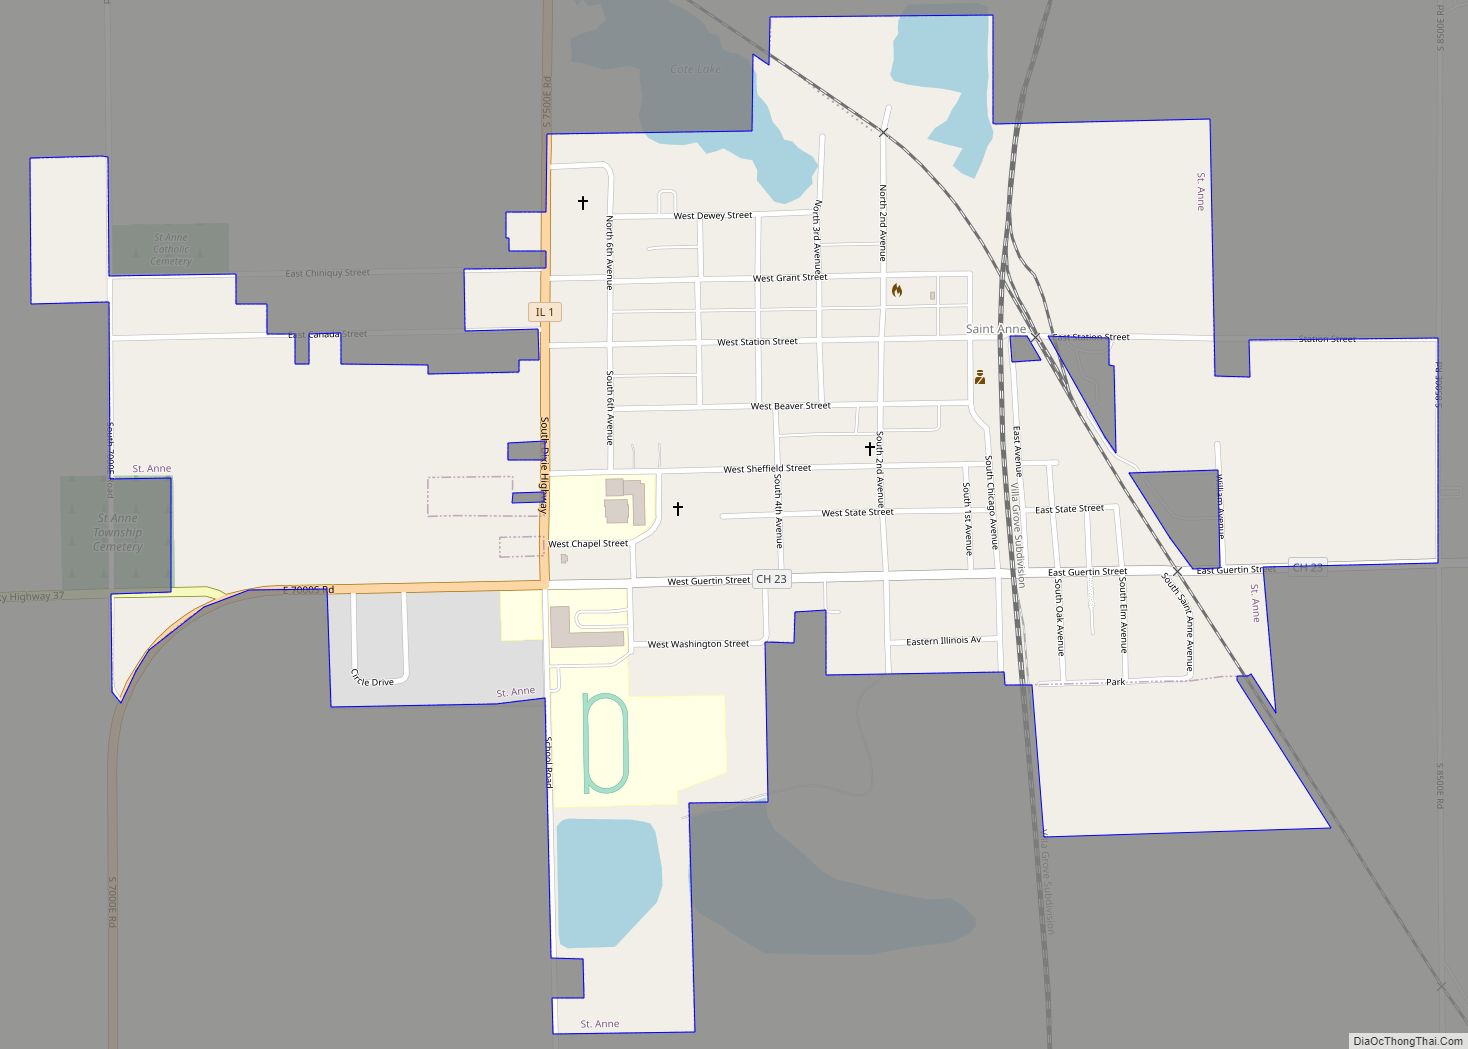 Map of St. Anne village